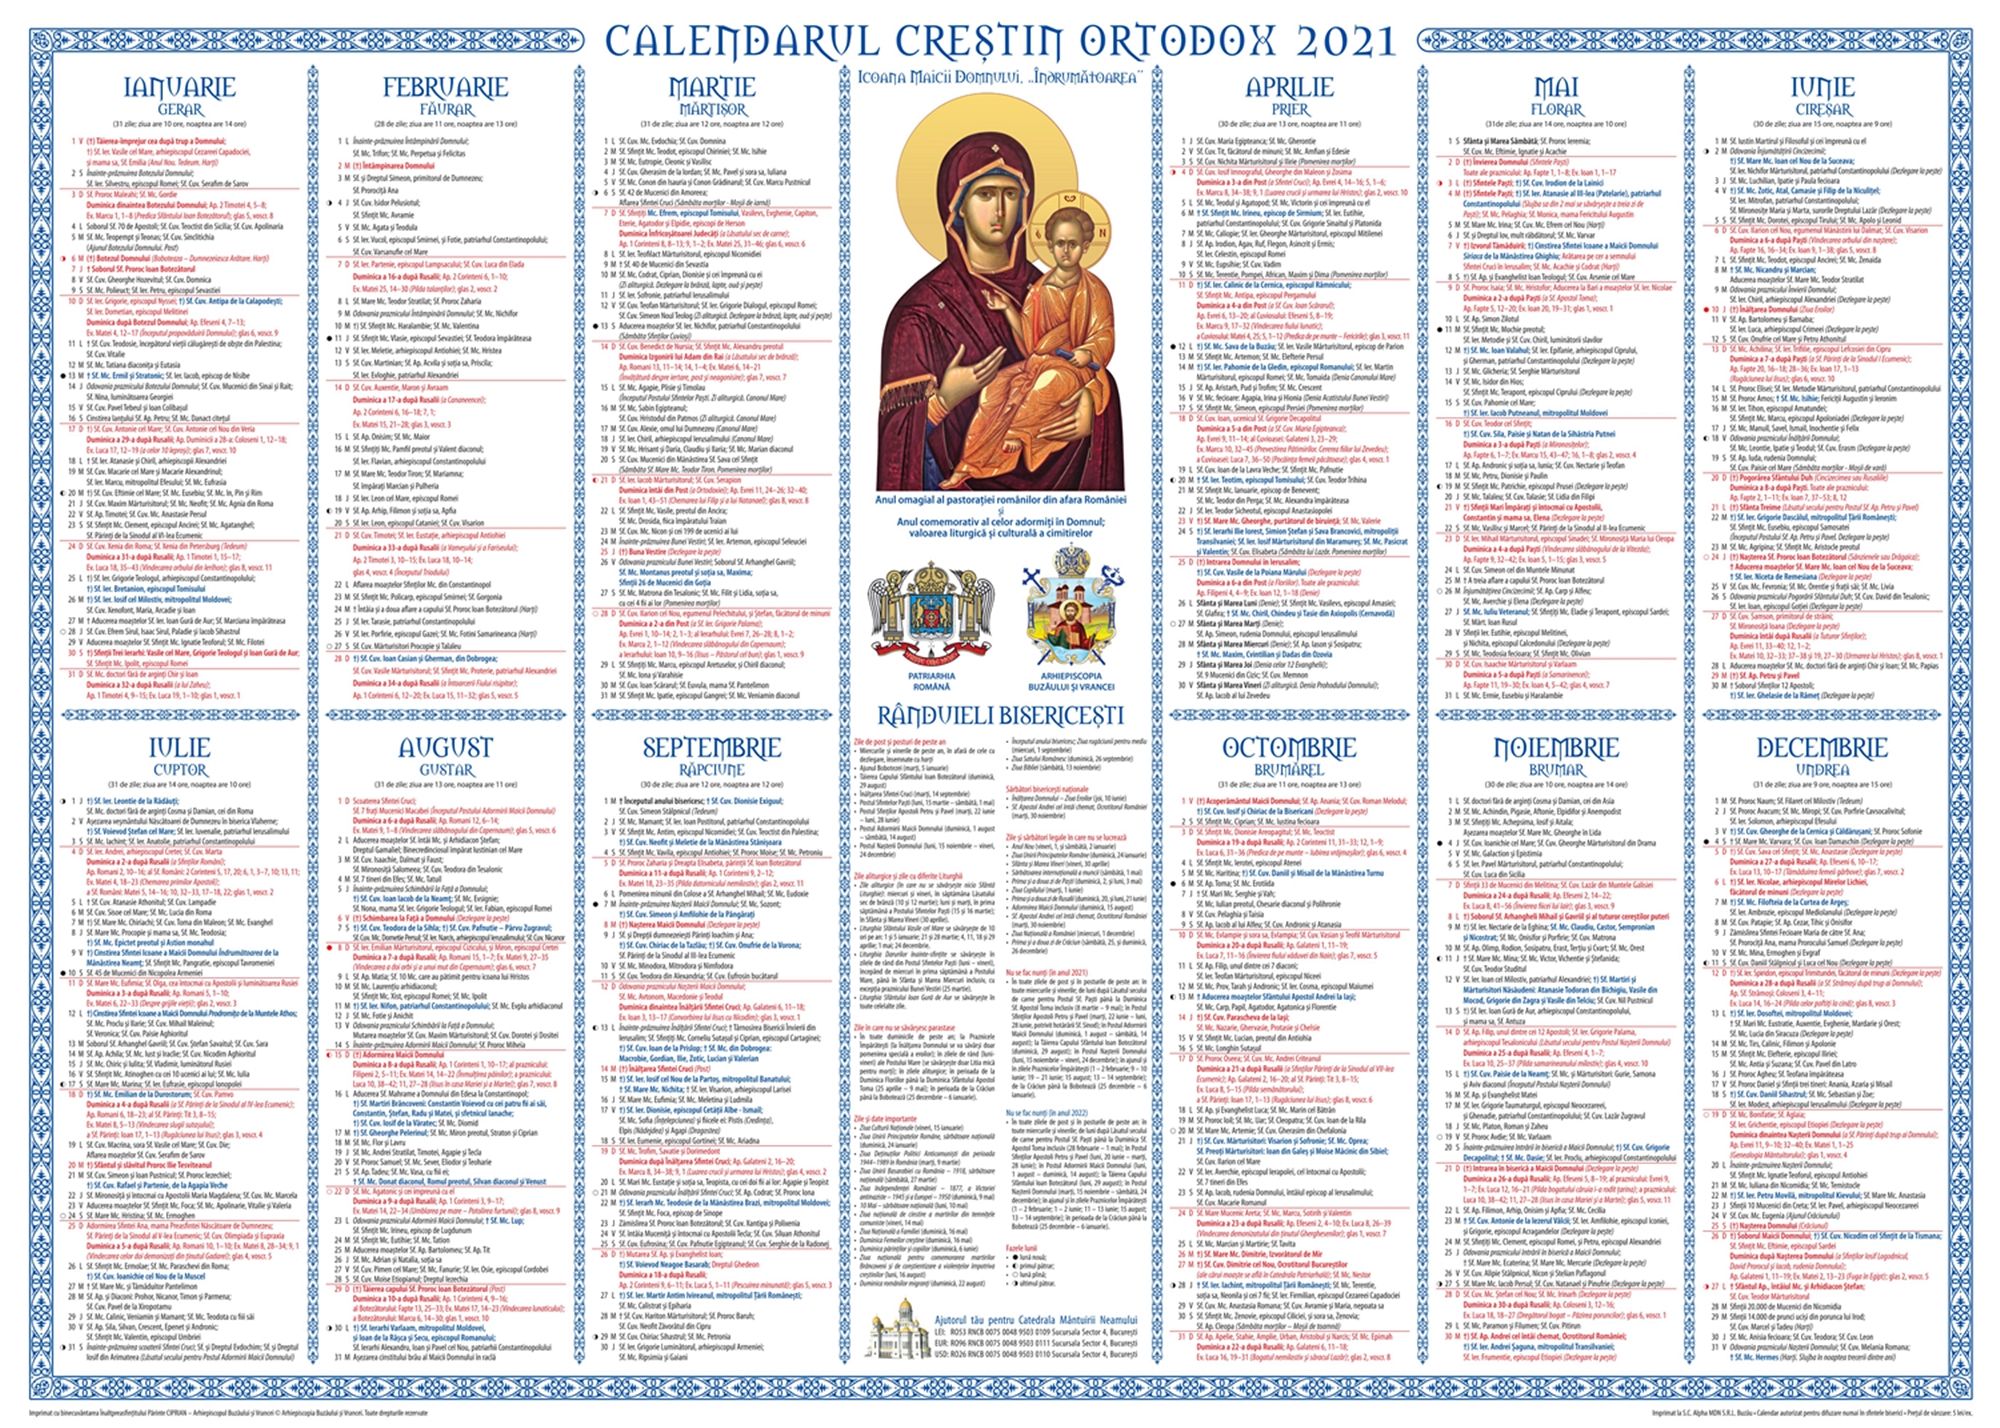 A apărut calendarul creștin ortodox pentru anul 2021 în ...